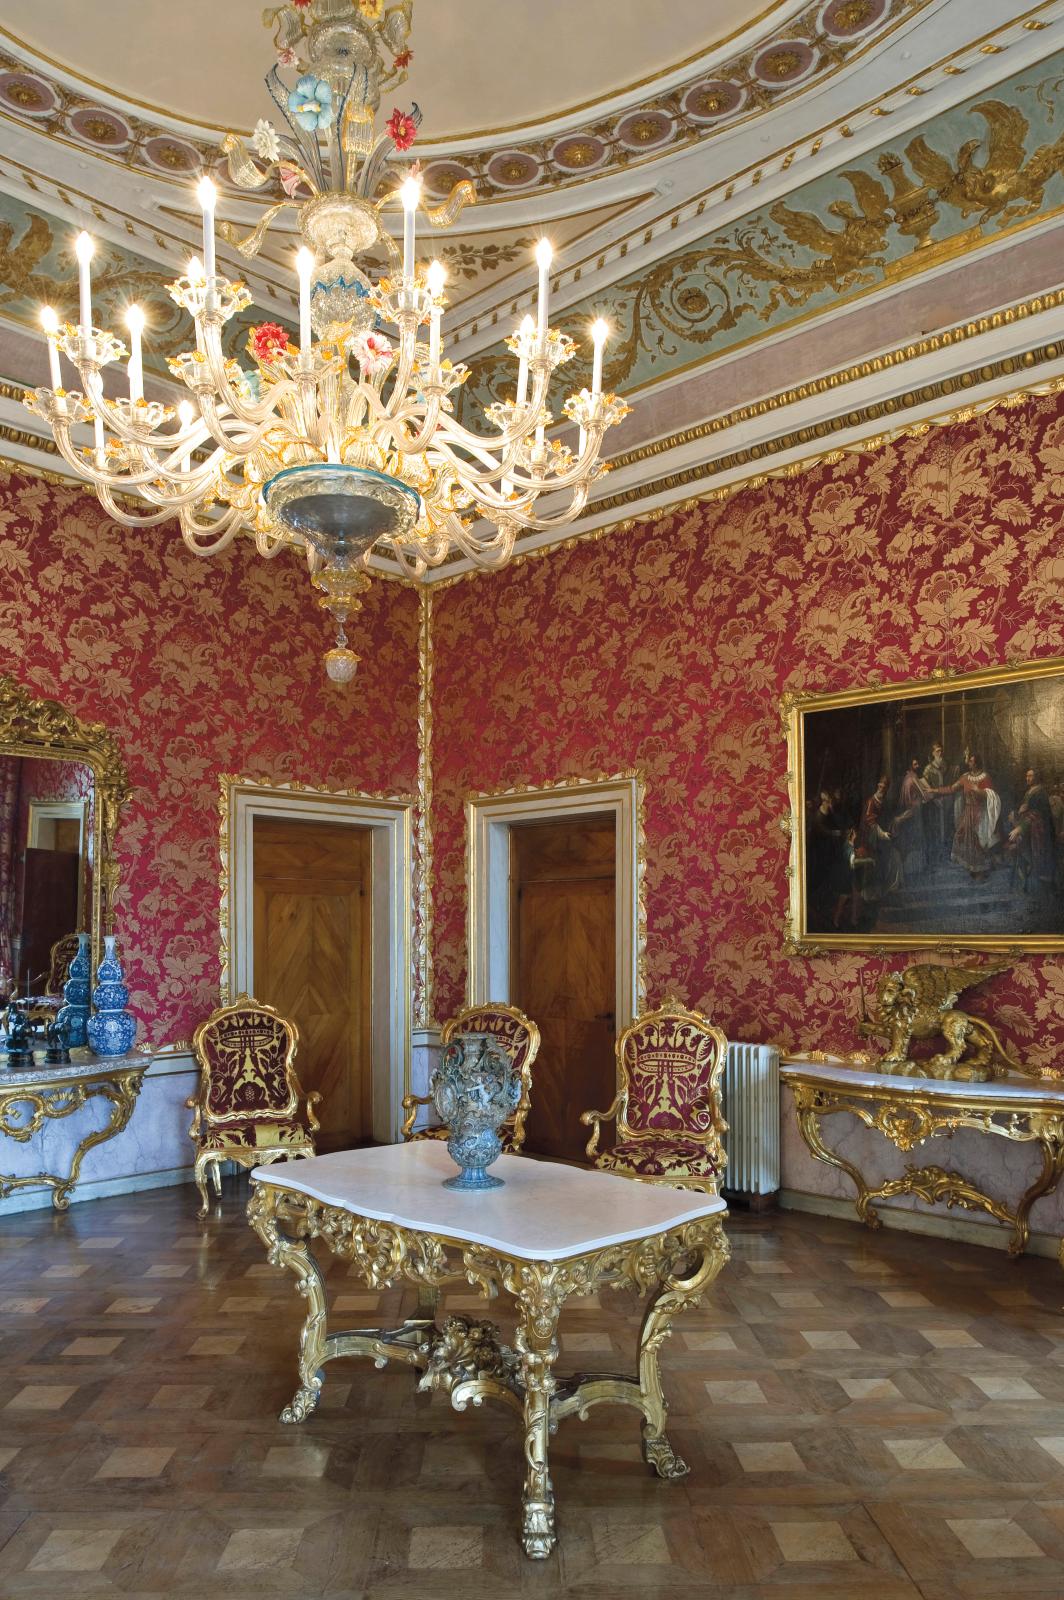 Vue de la Salle des dames d’honneur des appartements de l’impératrice Sissi au palais royal de Venise, restaurée grâce au soutien du Comit